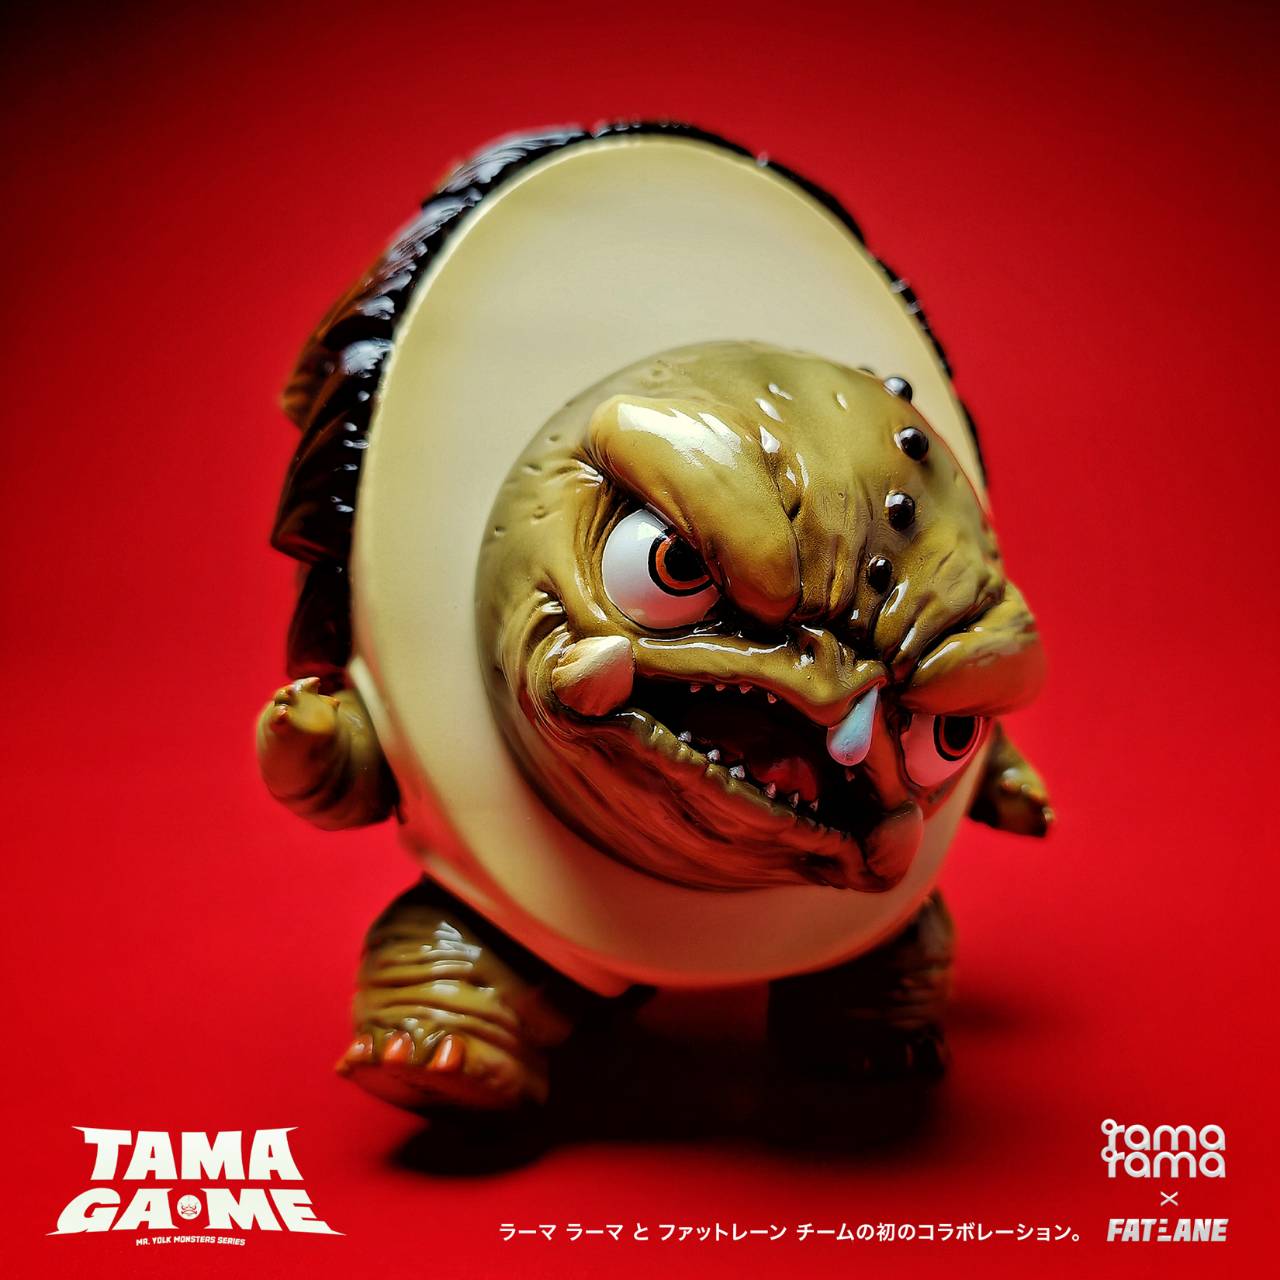 Tama Ga-Me by Ramarama studio x Fat Lane17 - Preorder